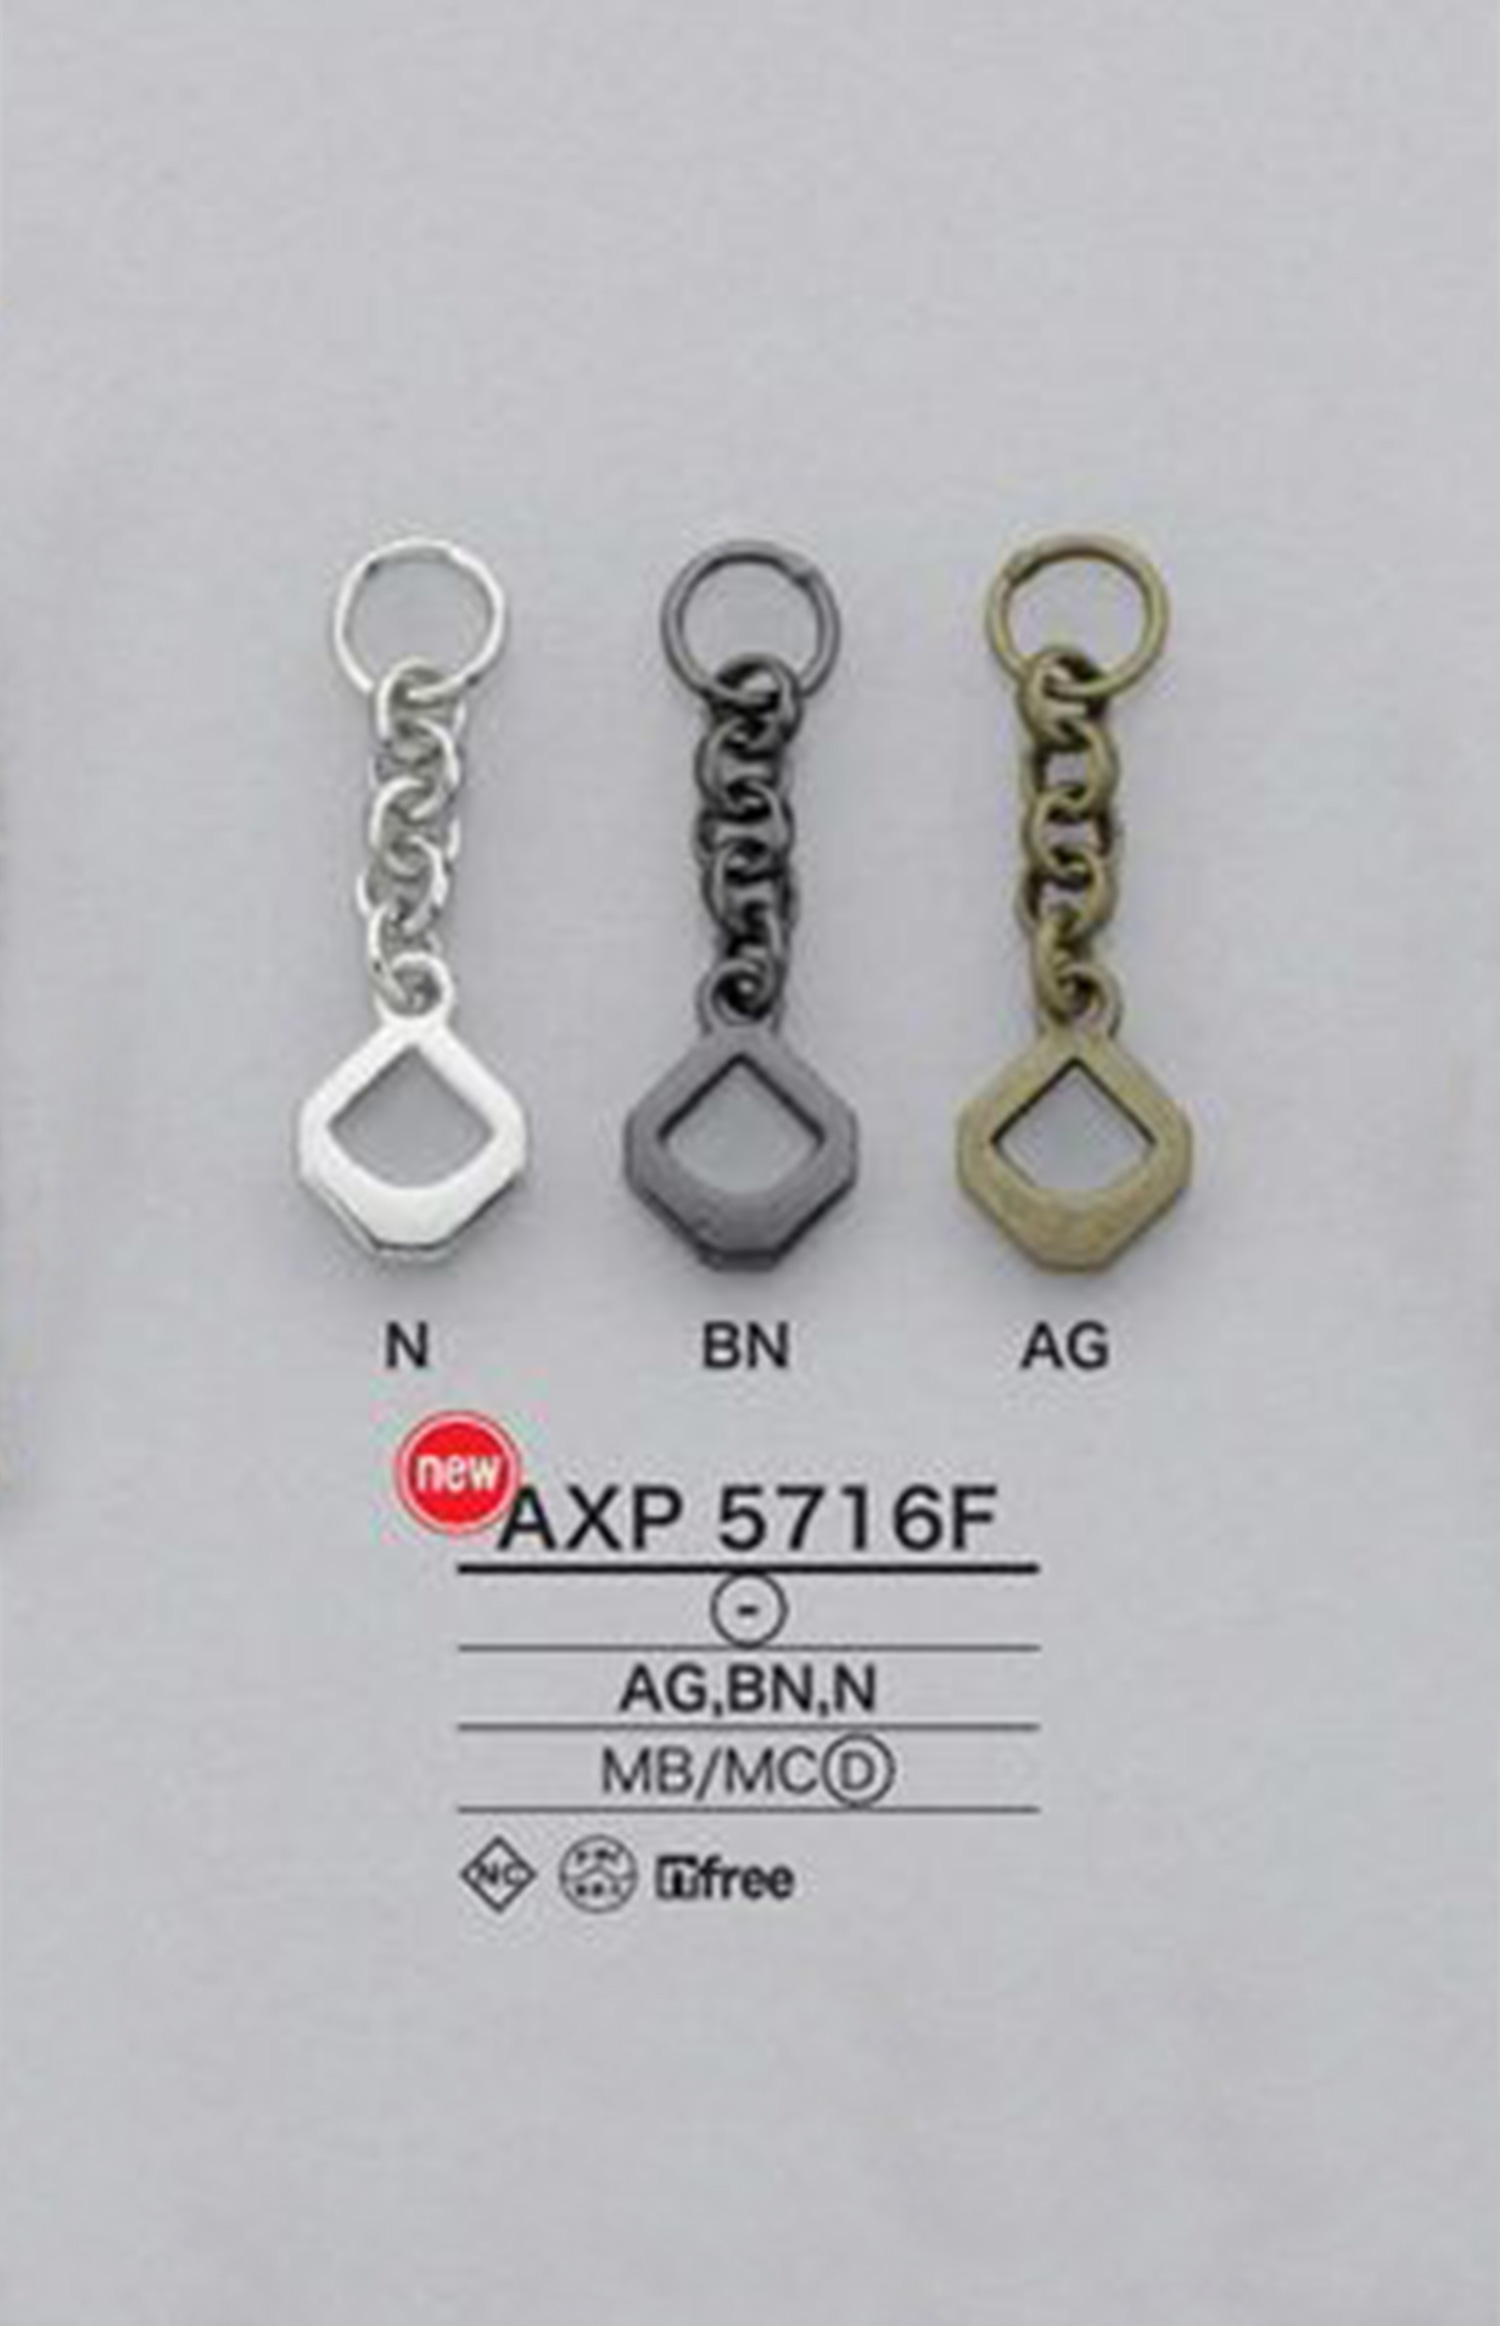 AXP5716F Chain Zipper Point (Pull Tab) IRIS